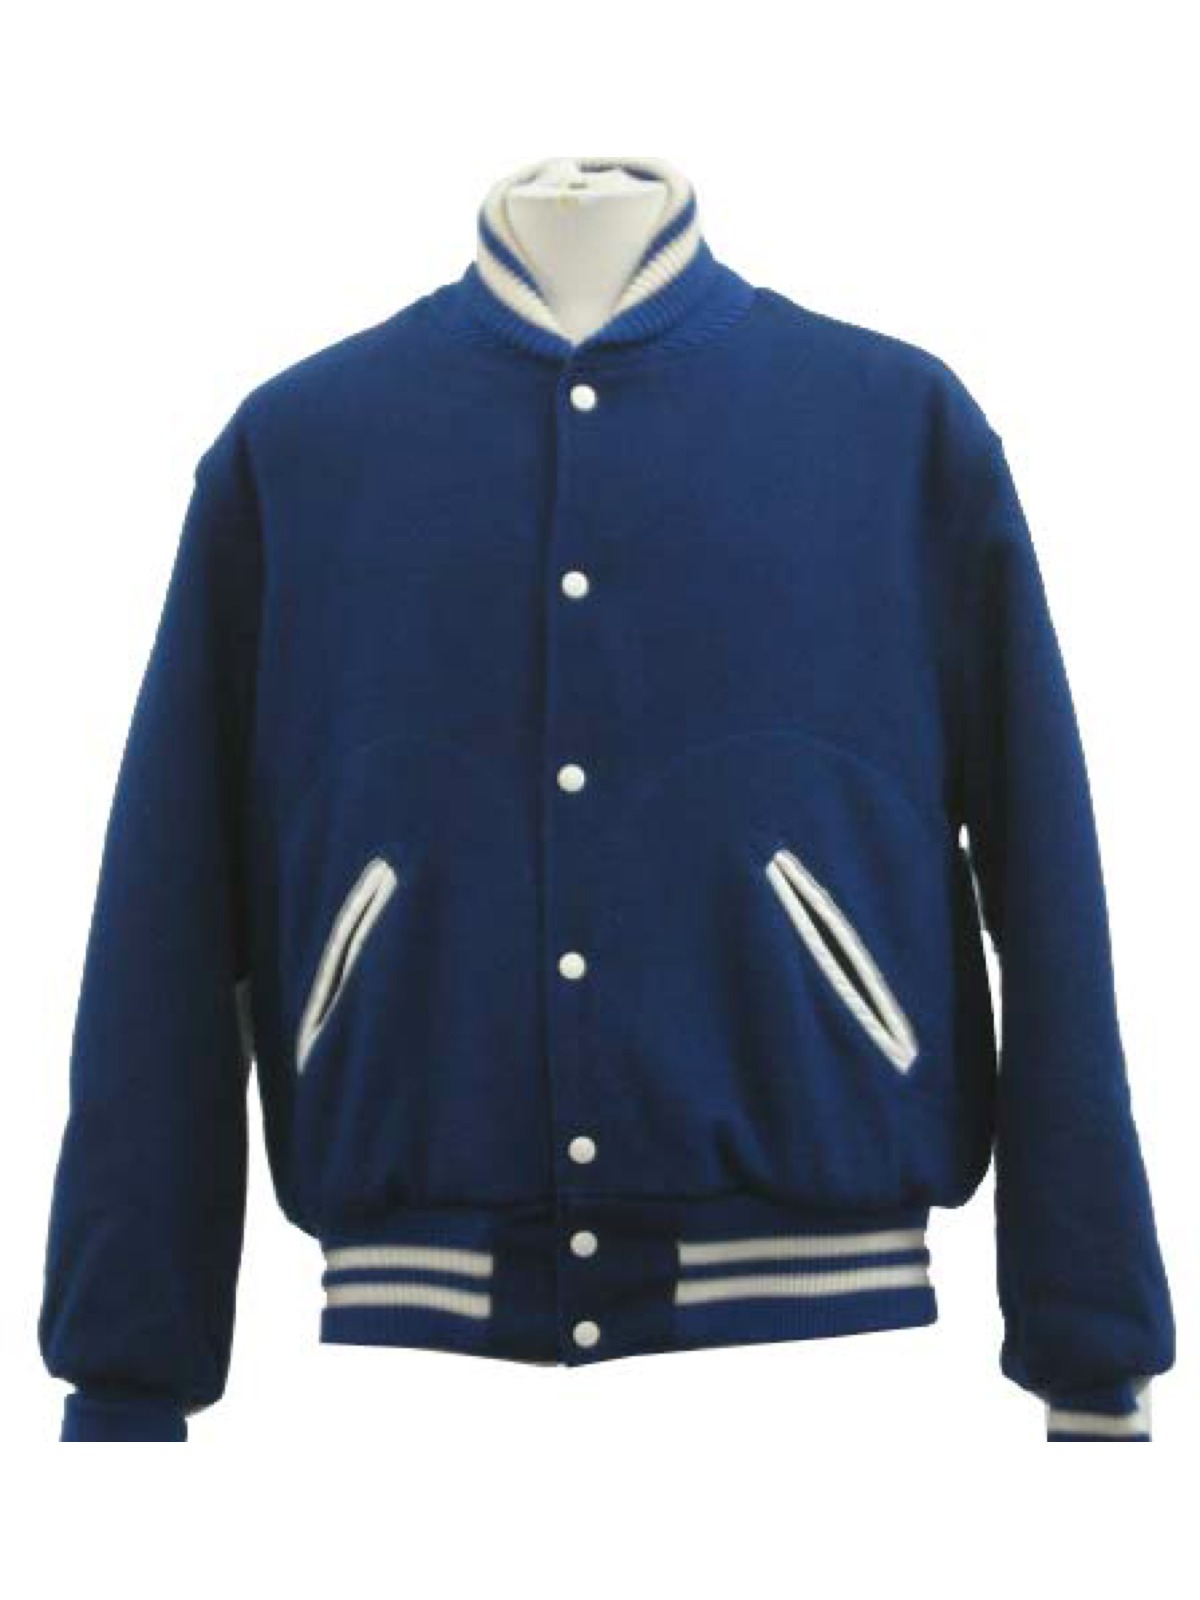 Vintage School Jackets 80's Jacket: 80s -School Jackets- Mens blue wool ...